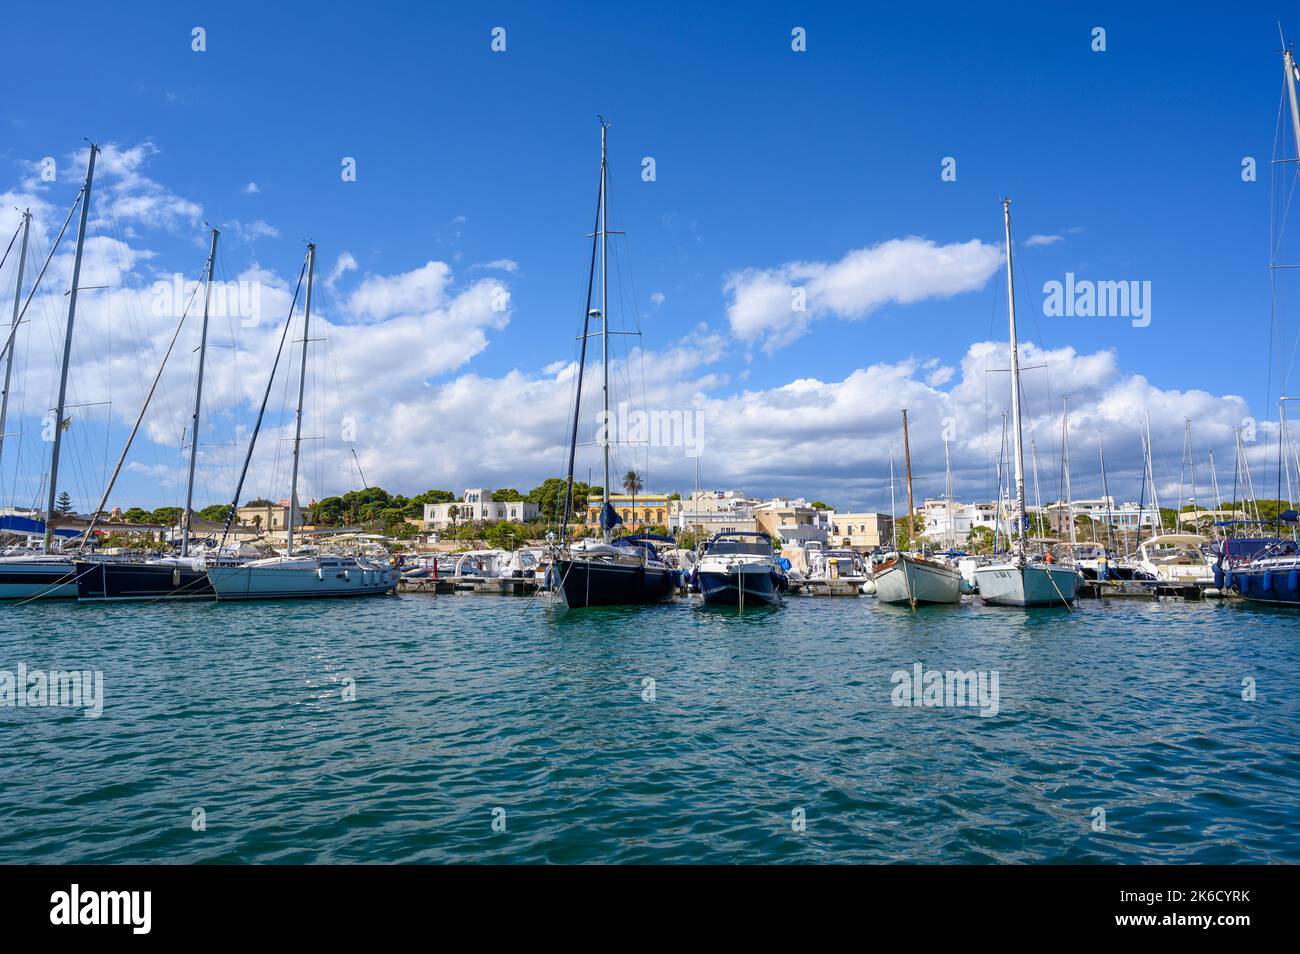 St Maria di Leuca Freizeit Bootshafen mit Uferhäusern im Hintergrund. Apulien (Apulien), Italien. Stockfoto